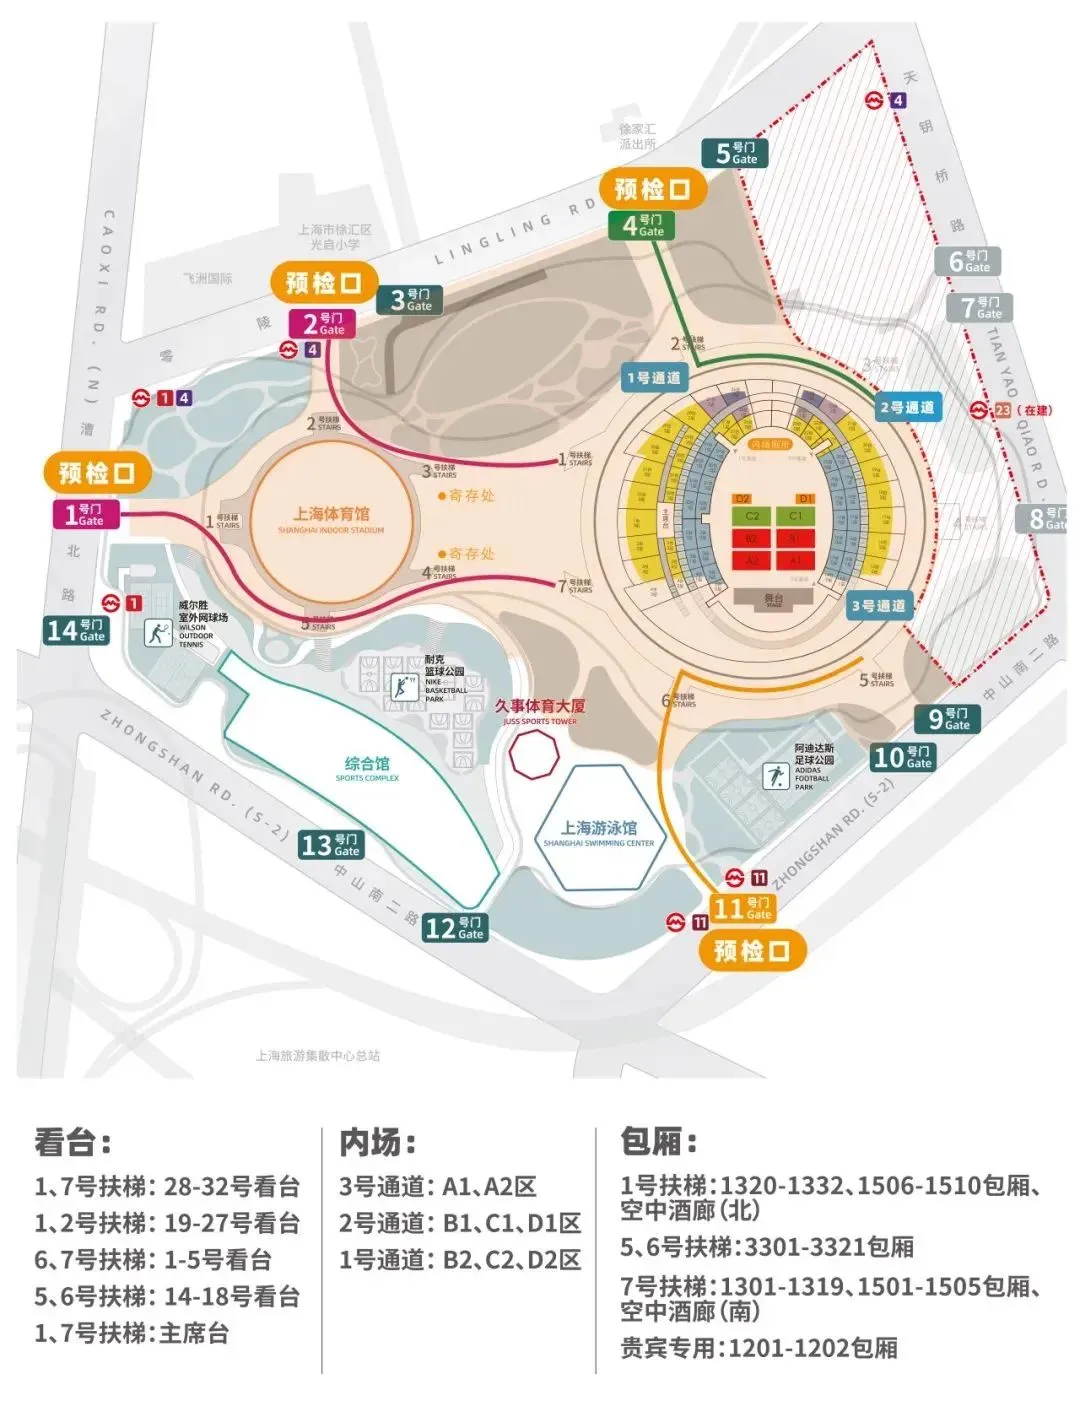 周杰伦演唱会前黄牛集体退票引热议 周杰伦上海演唱会在哪个体育场